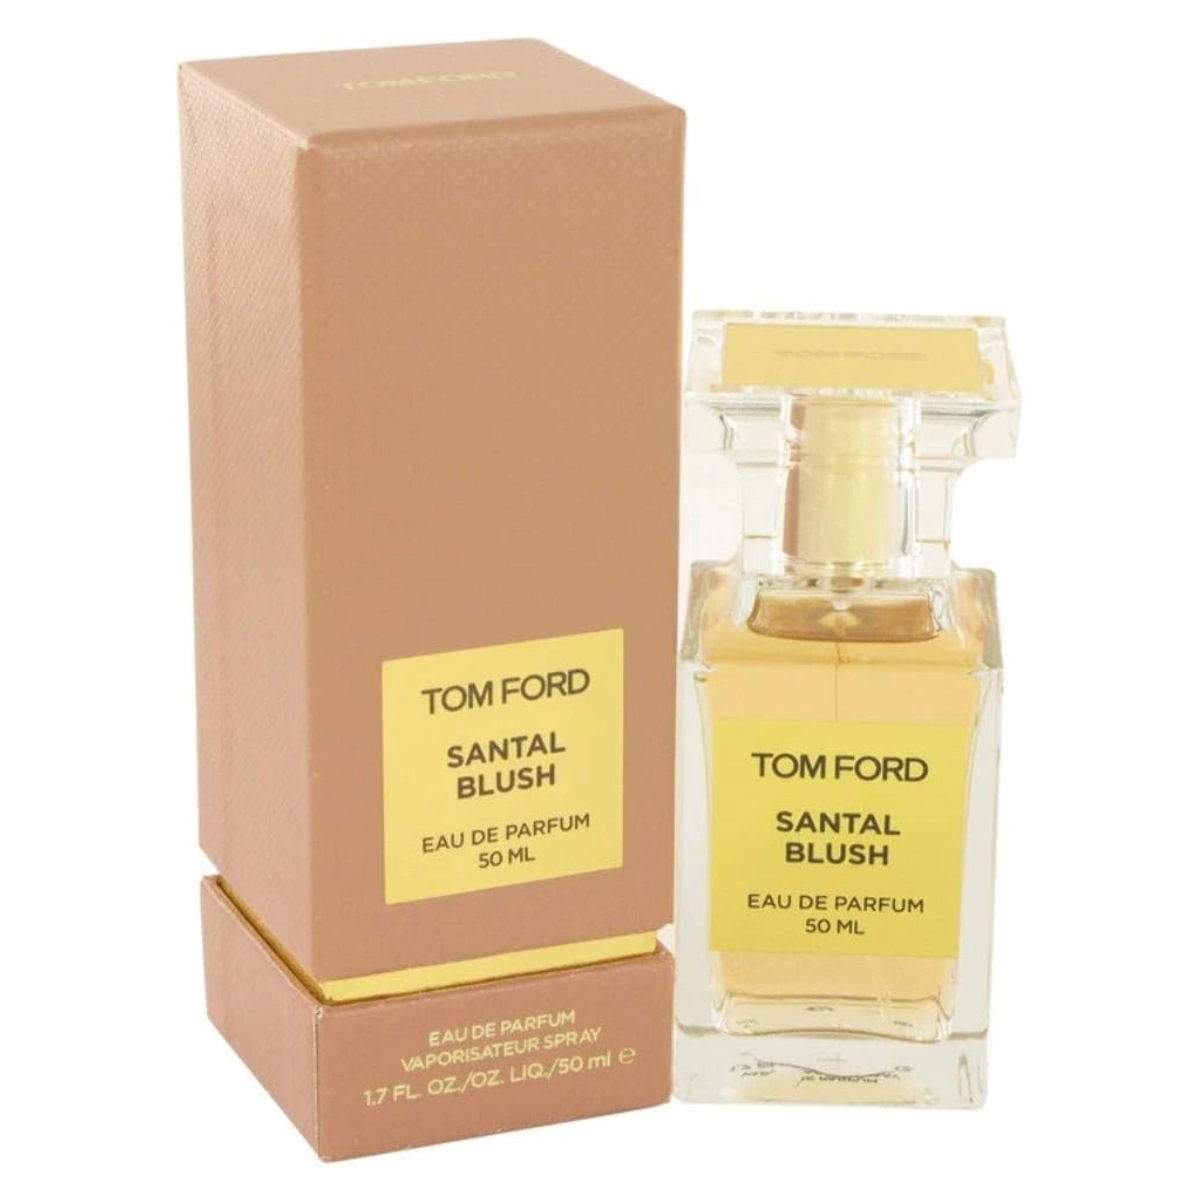 Tom Ford Santal Blush Perfume bottle on white background